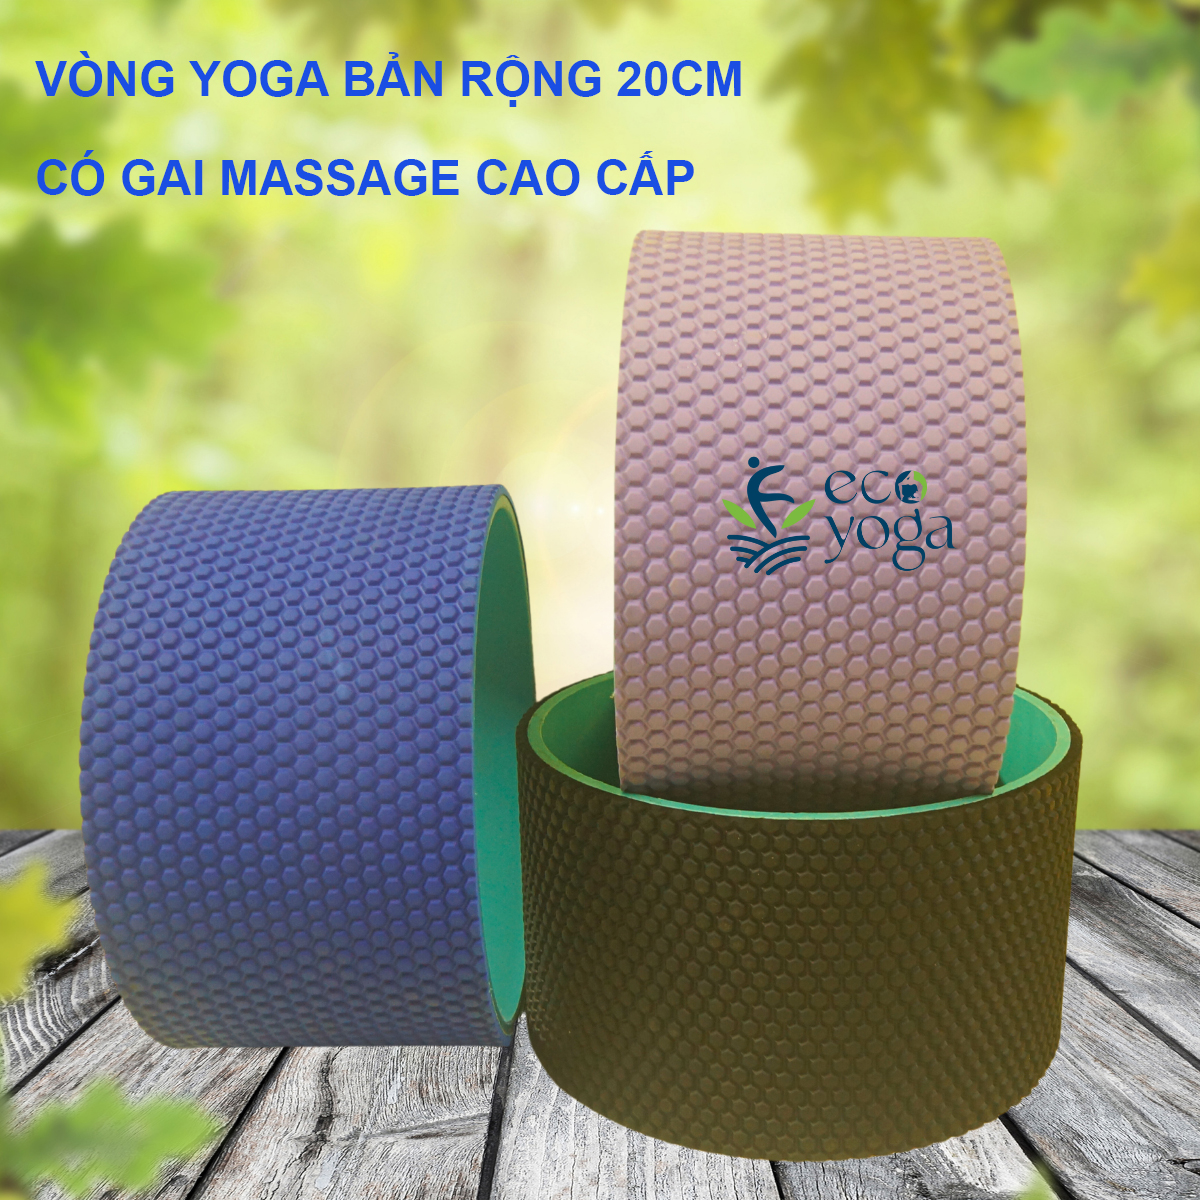 Vòng tập yoga bản rộng 20cm và 13cm bề mặt gai 3D chịu lực 250kg , nhựa đổ ABS cao cấp, hỗ trợ tập yoga gym thể hình , massage lưng và hỗ trợ các tư thế chuyên nghiệp , kích thước 34x34x20cm - Hàng Chính Hãng